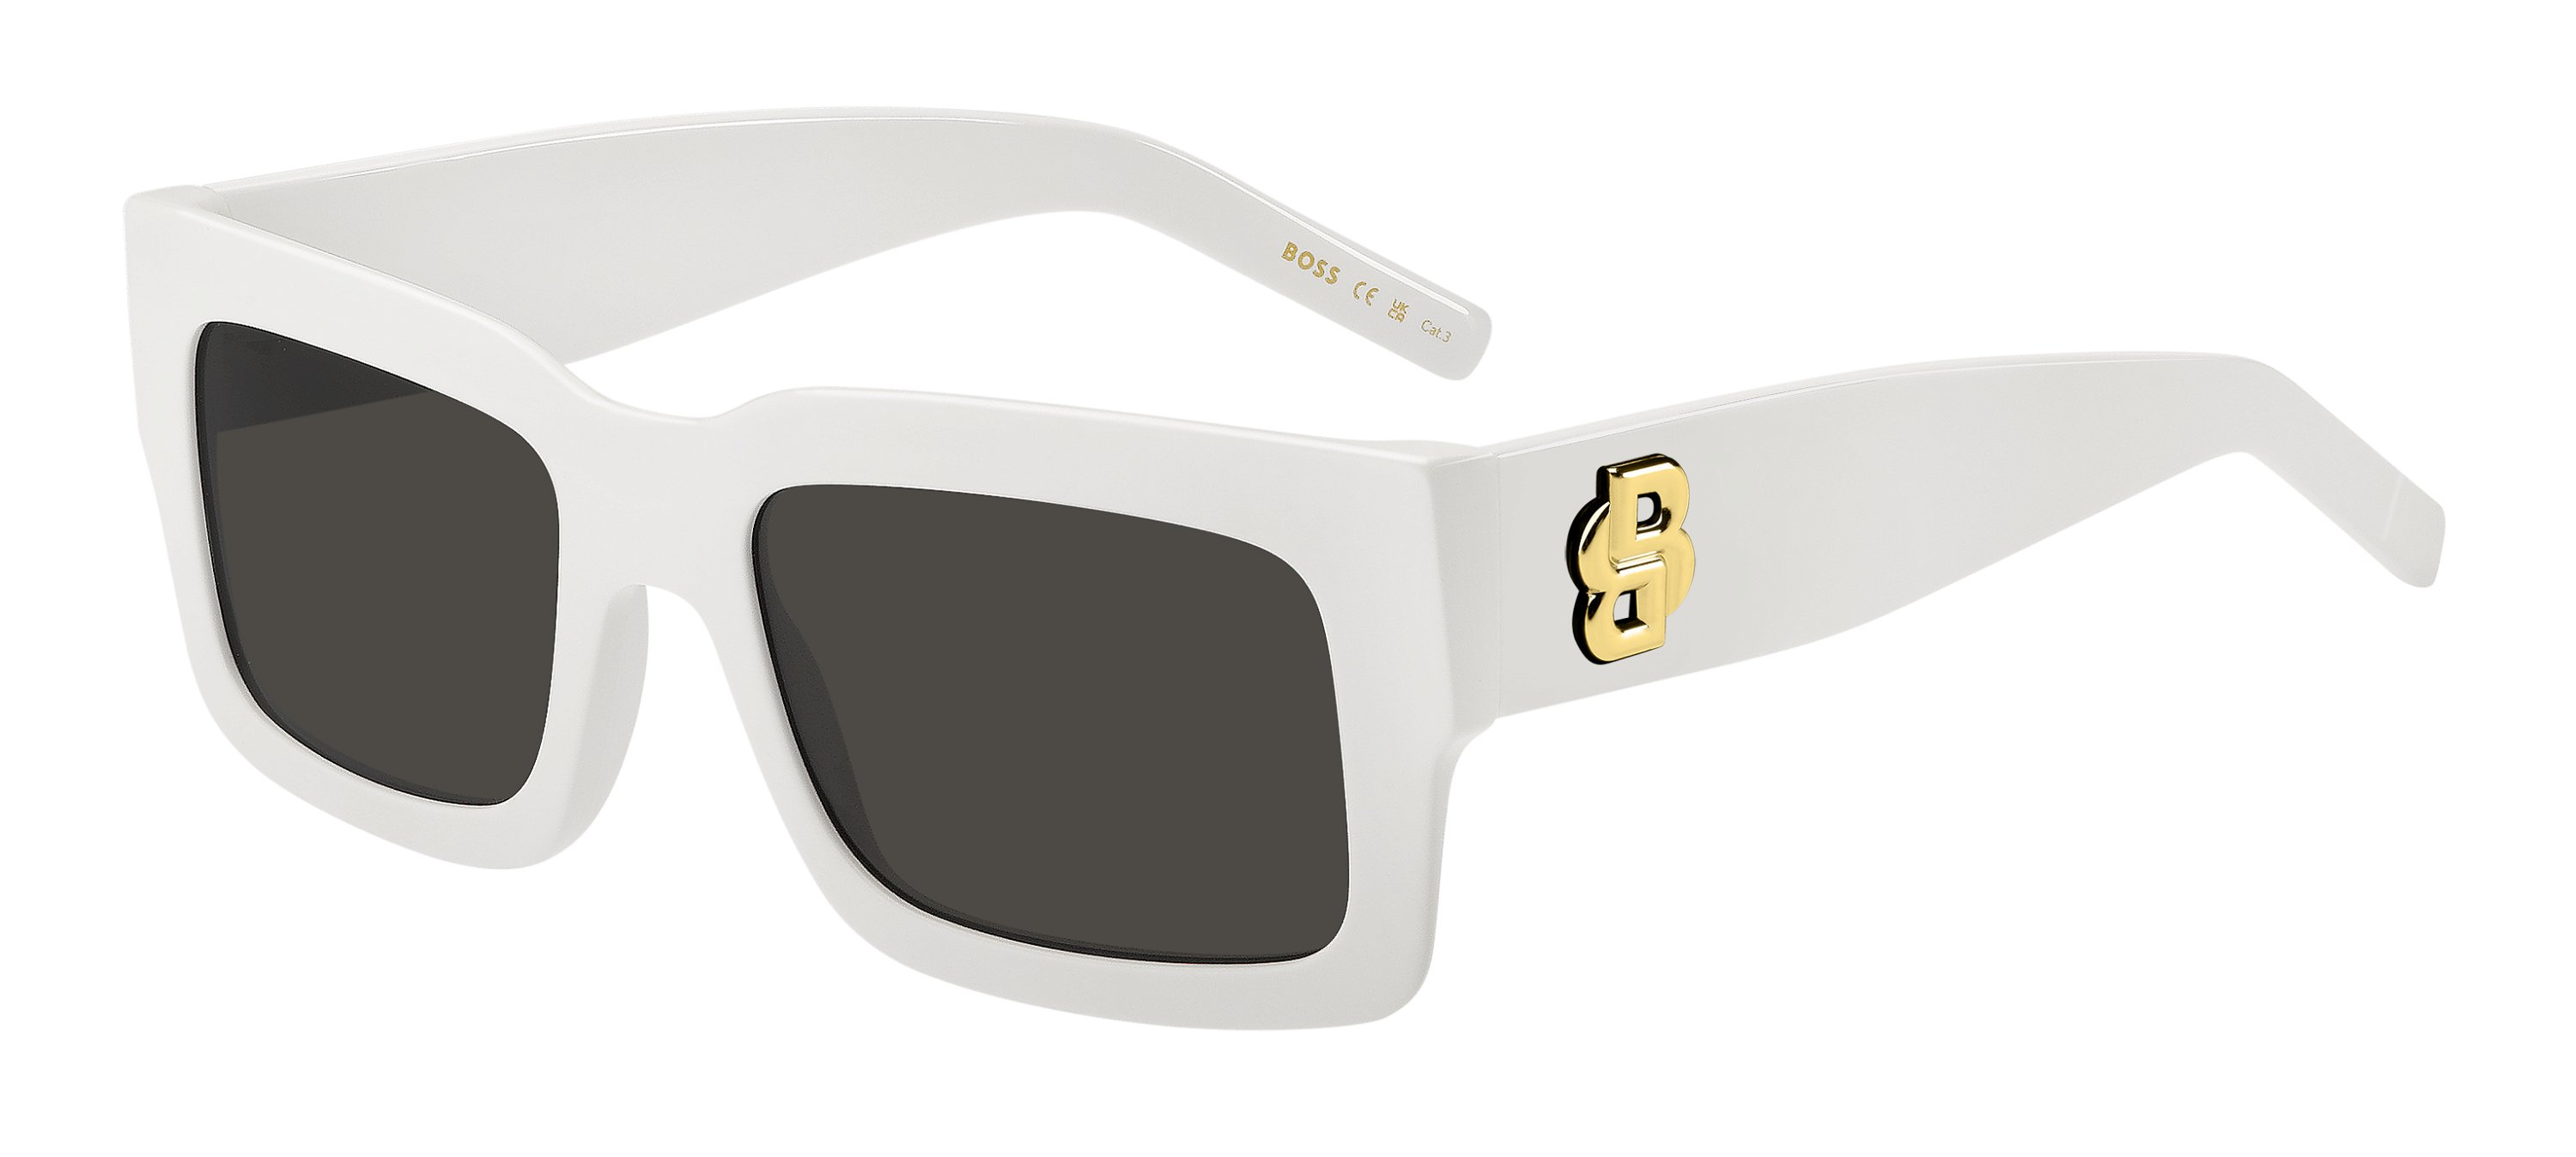 Das Bild zeigt die Sonnenbrille BOSS1654S VK6 von der Marke BOSS in Weiß.